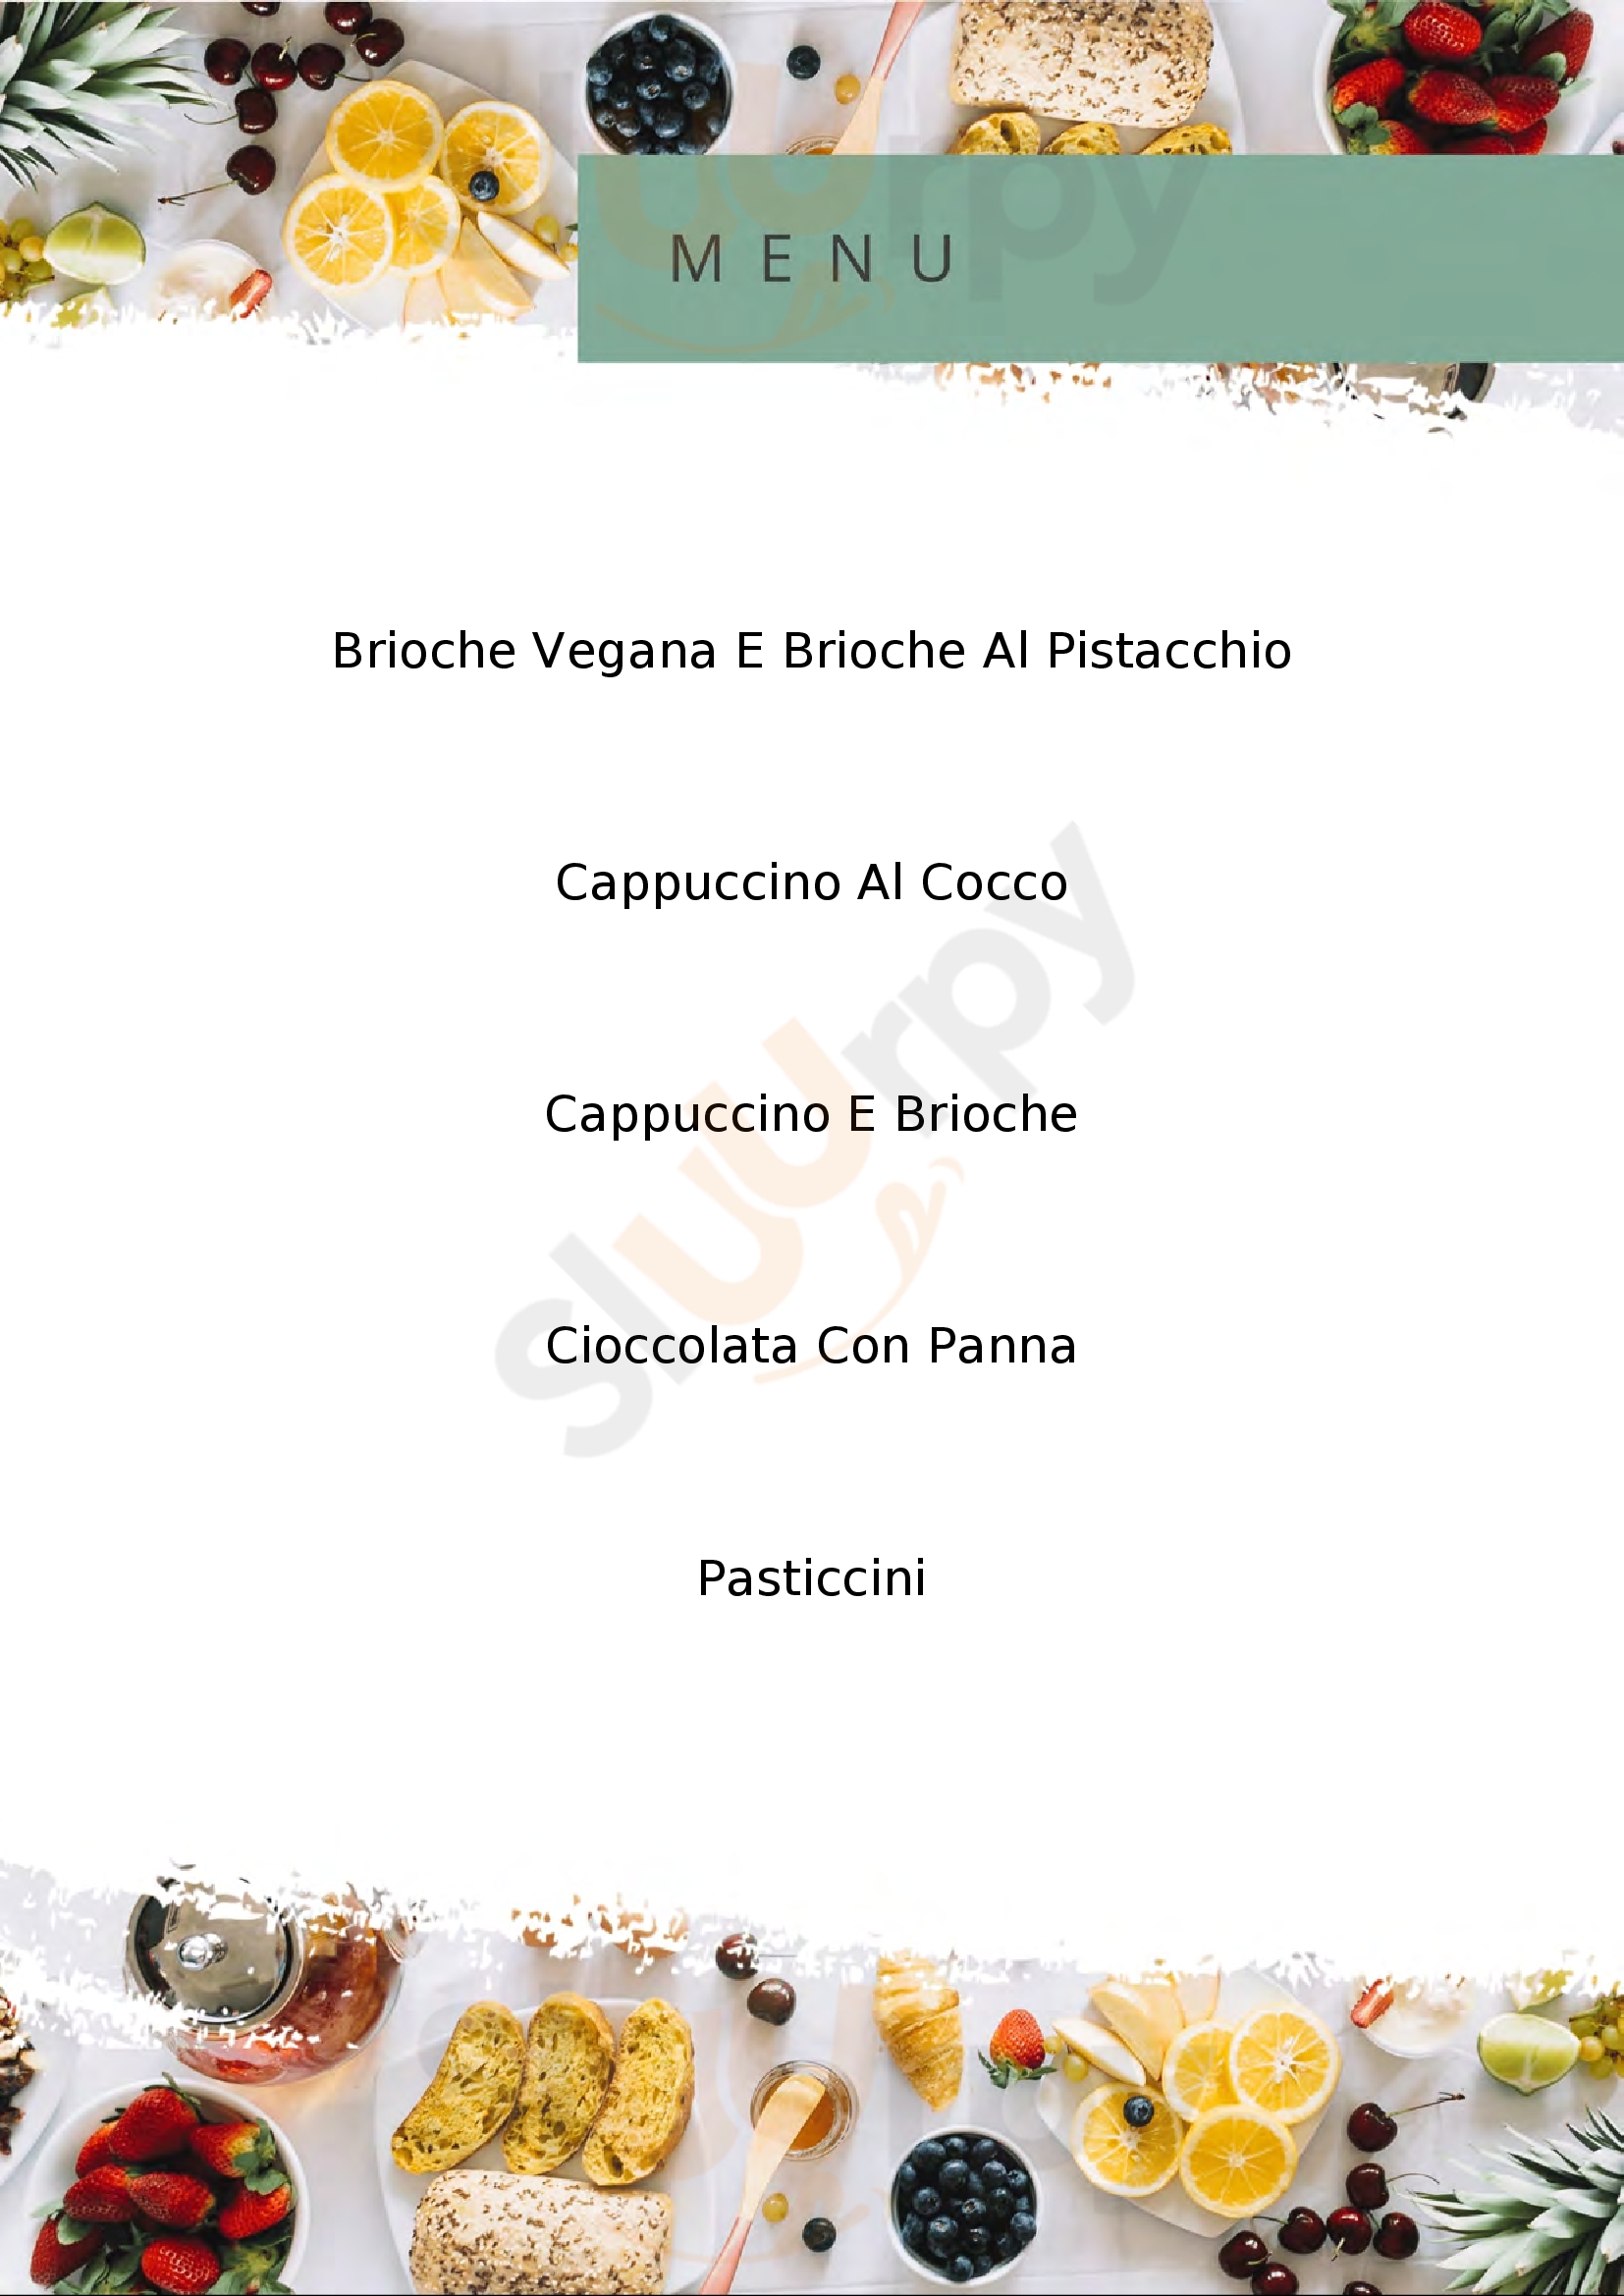 Zenzero & cannella Pescate menù 1 pagina